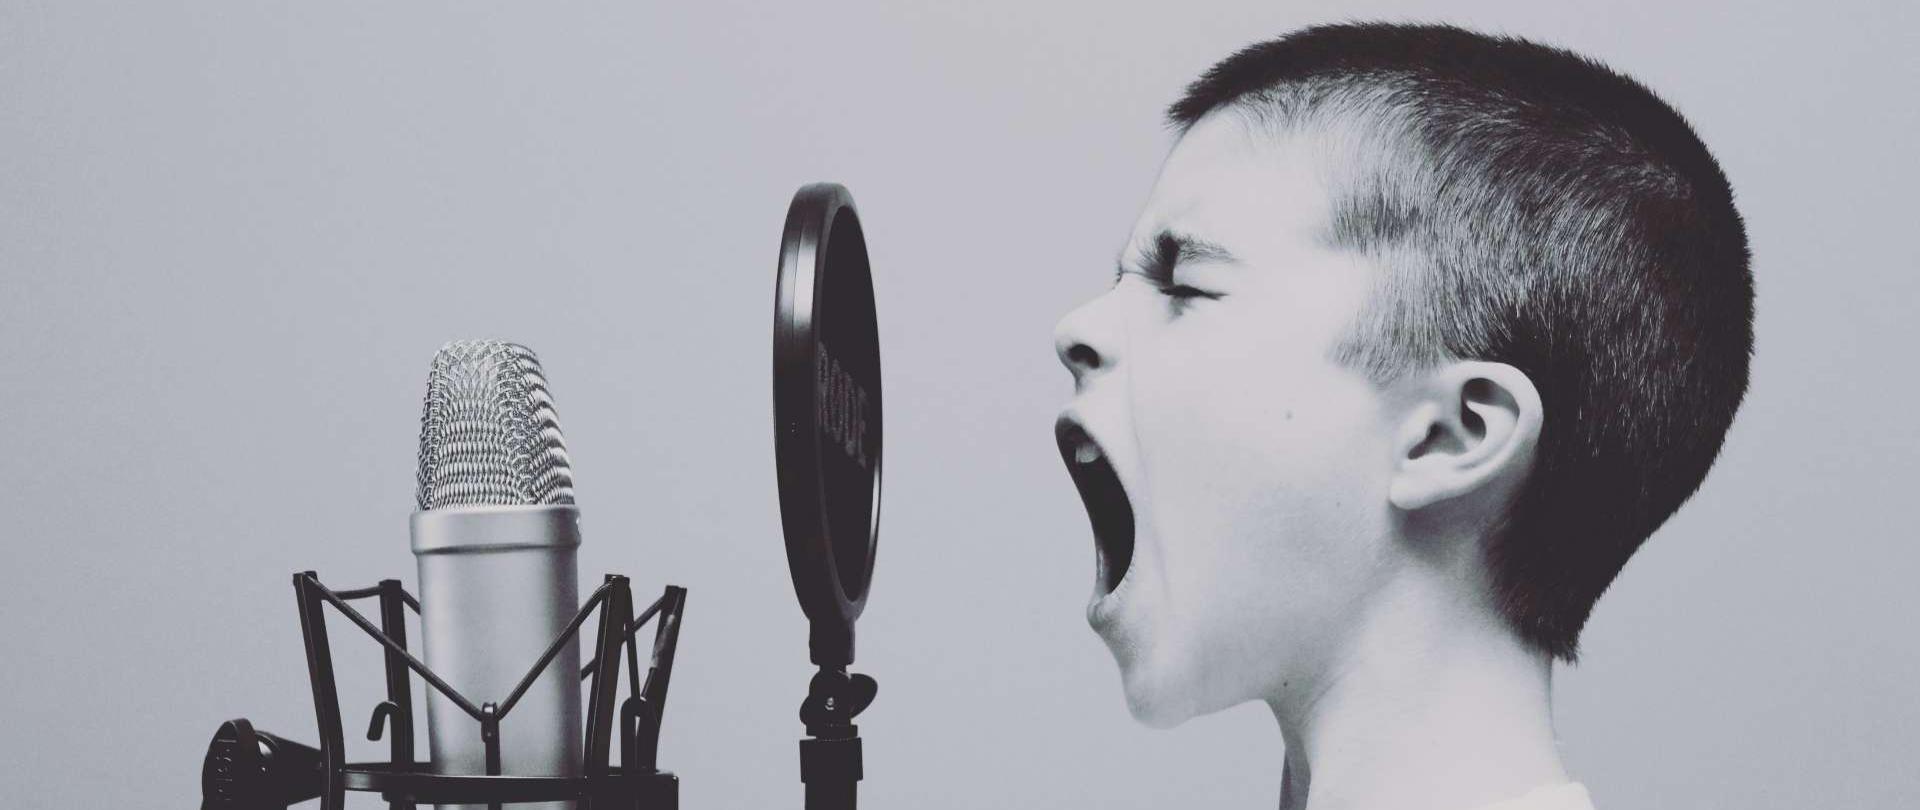 zdjęcie przedstawia chłopca śpiewającego do mikrofonu studyjnego